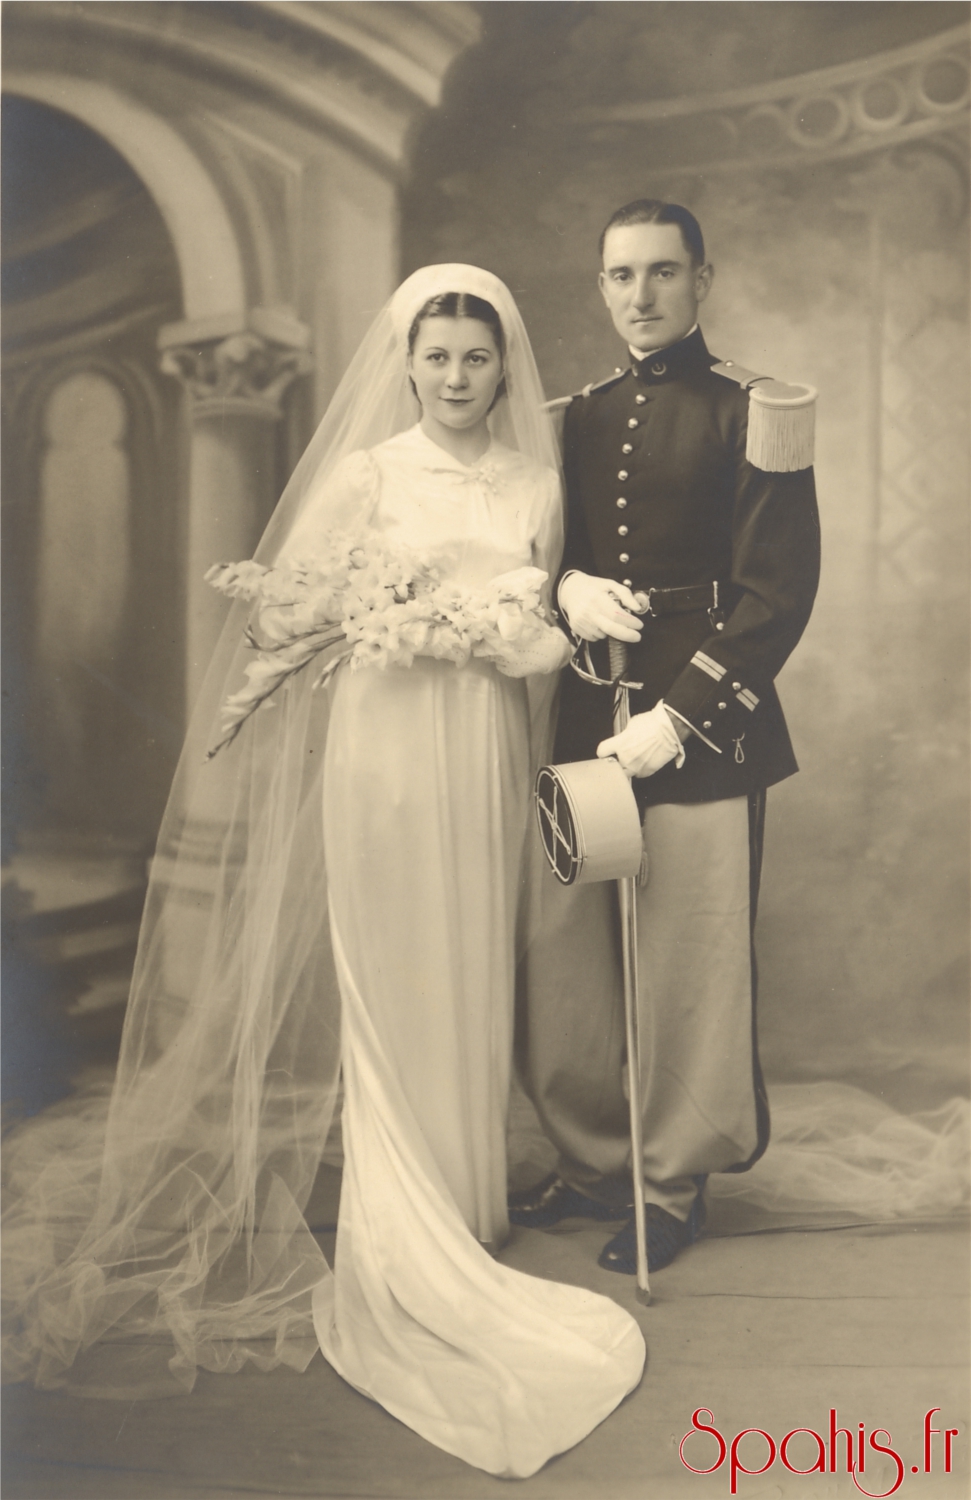 Colonel Teule Spahi - Photo du lieutenant Teule en grande tenue prise lors de son mariage en 1939